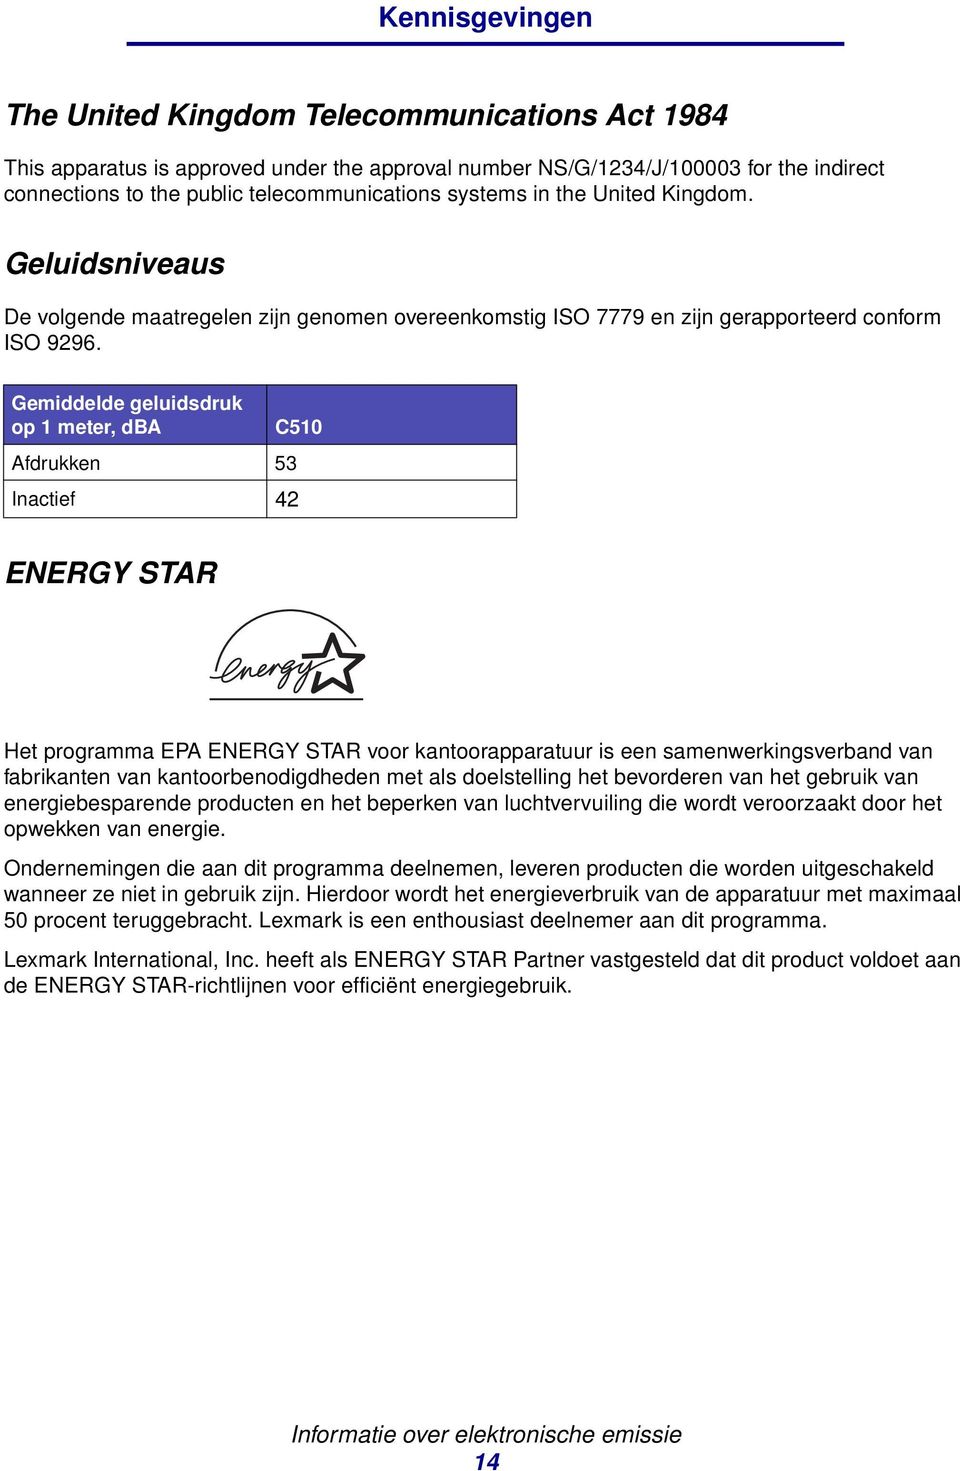 Gemiddelde geluidsdruk op 1 meter, dba C510 Afdrukken 53 Inactief 42 ENERGY STAR Het programma EPA ENERGY STAR voor kantoorapparatuur is een samenwerkingsverband van fabrikanten van